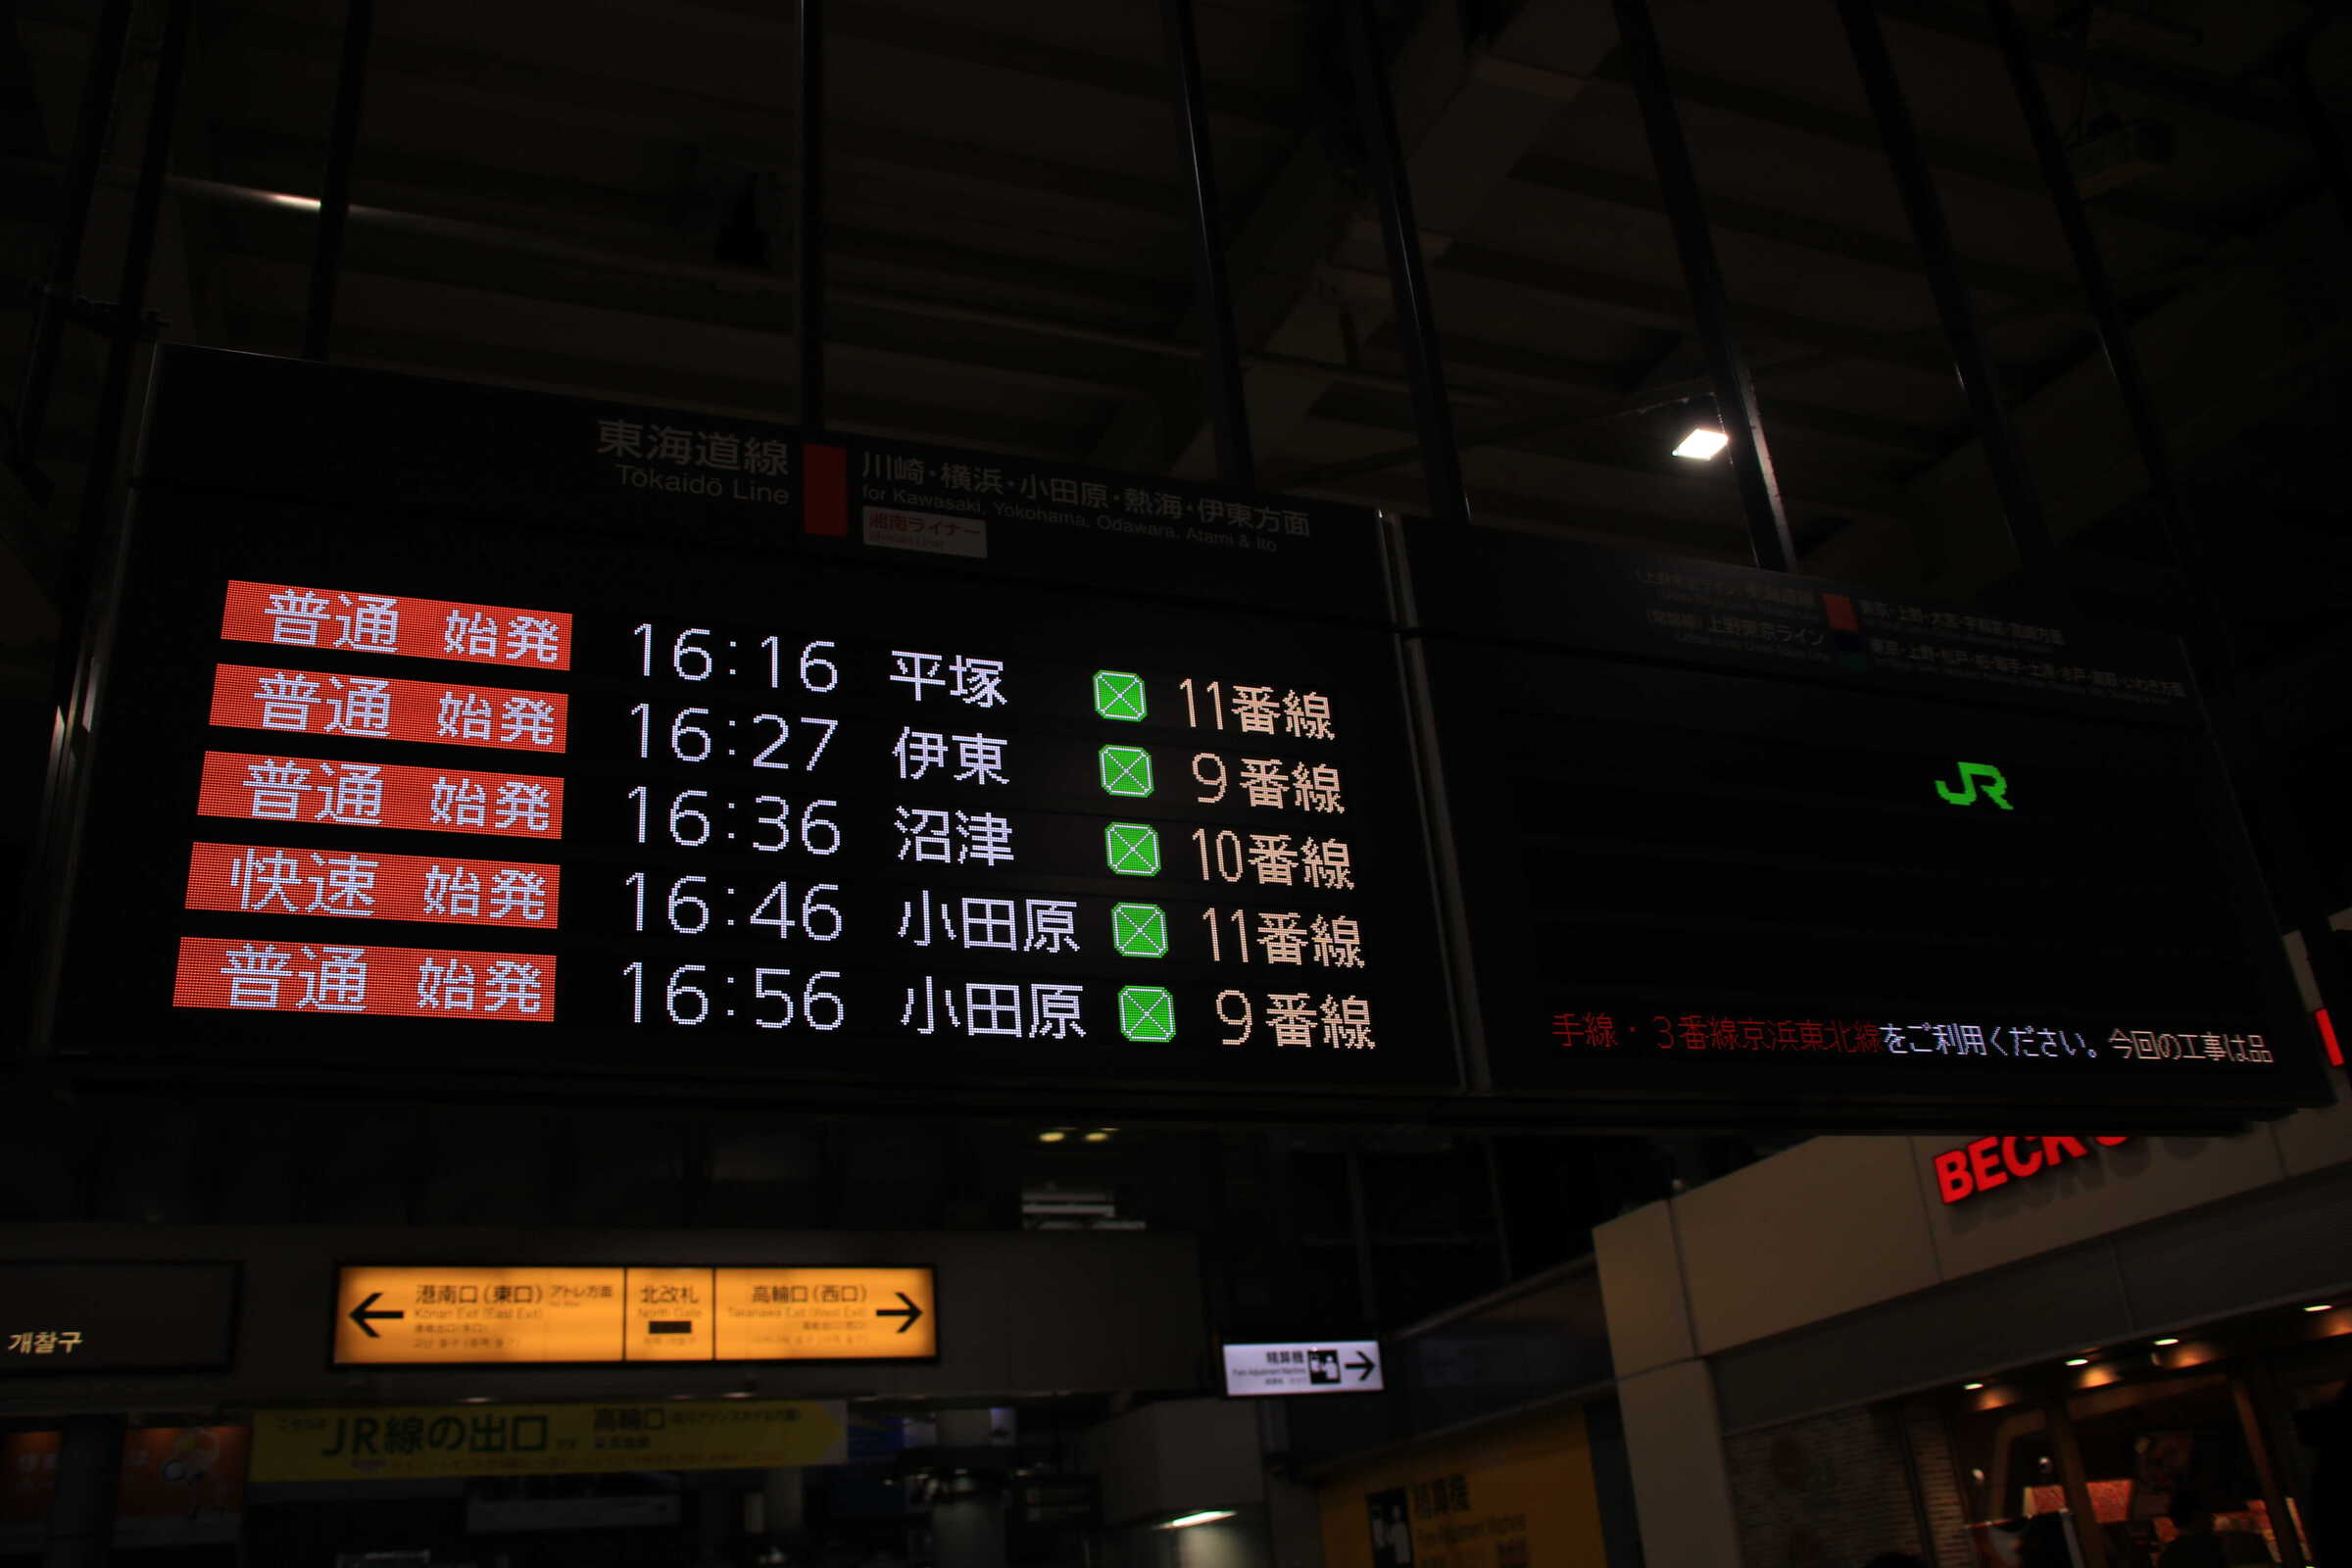 品川駅の電光掲示板